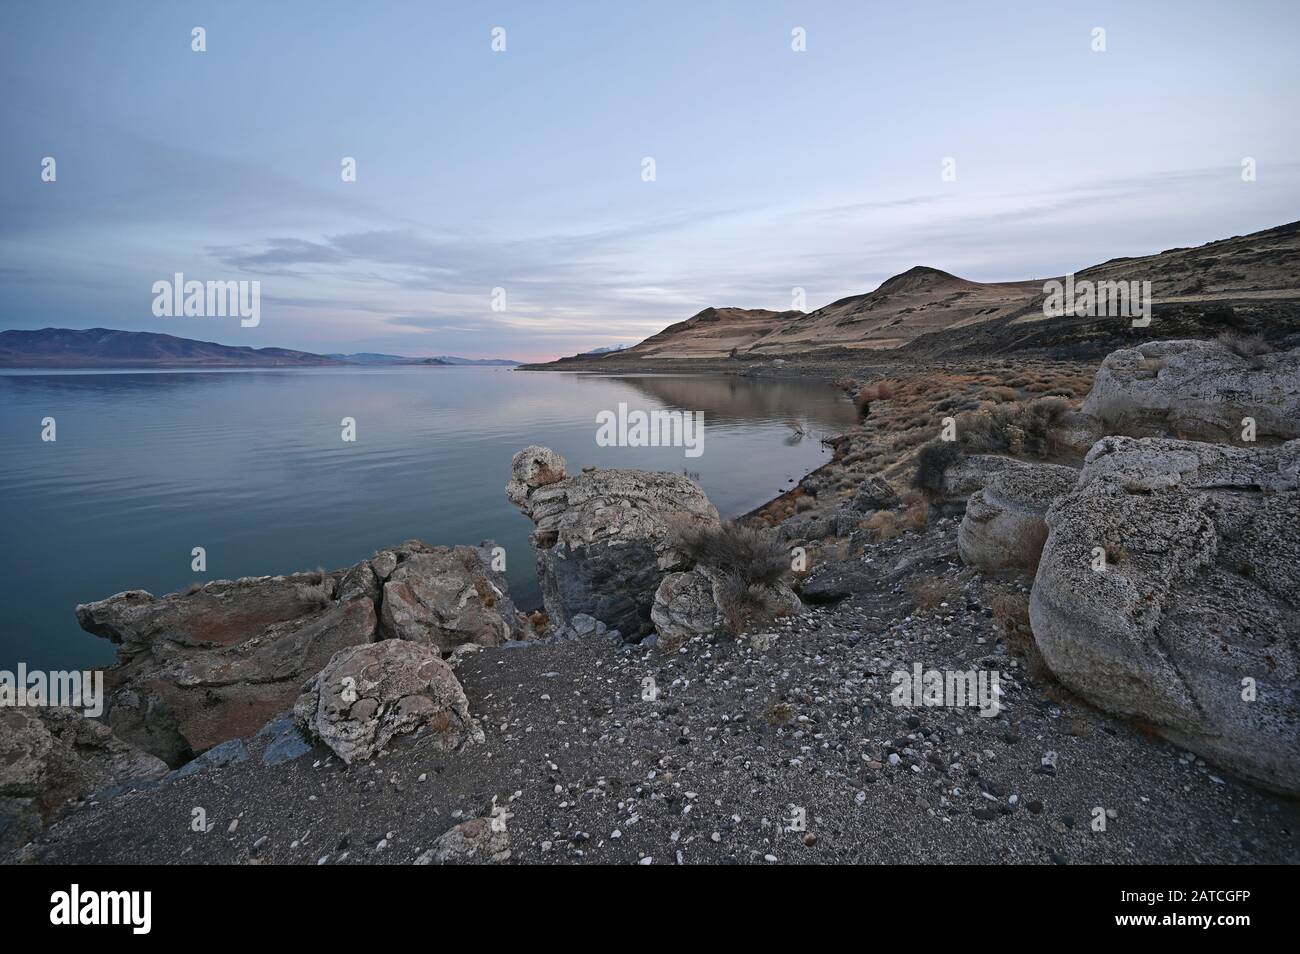 Felsformationen und Reflexionen des Pyramid Lake, Nevada am klaren, ruhigen Winternachmittag. Stockfoto